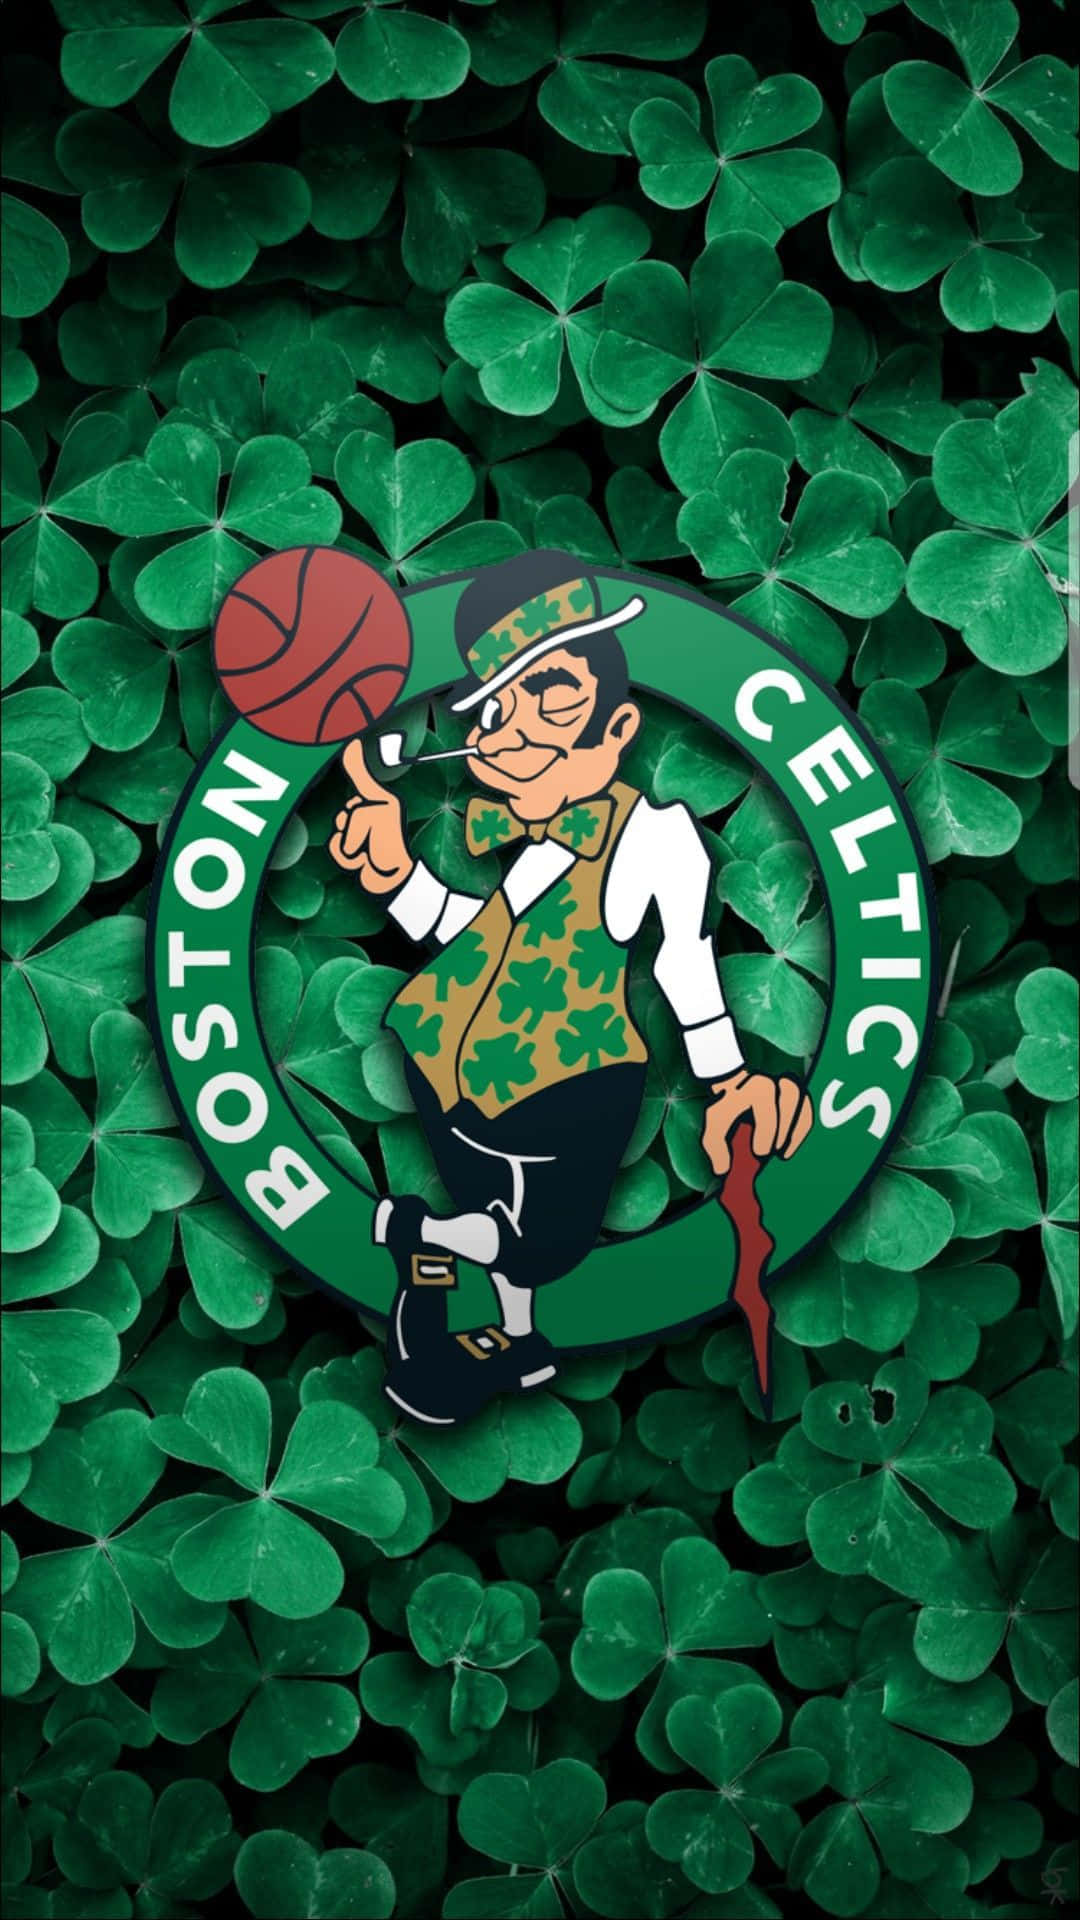 Boston Celtics  Boston celtics wallpaper, Boston celtics, Boston wallpaper